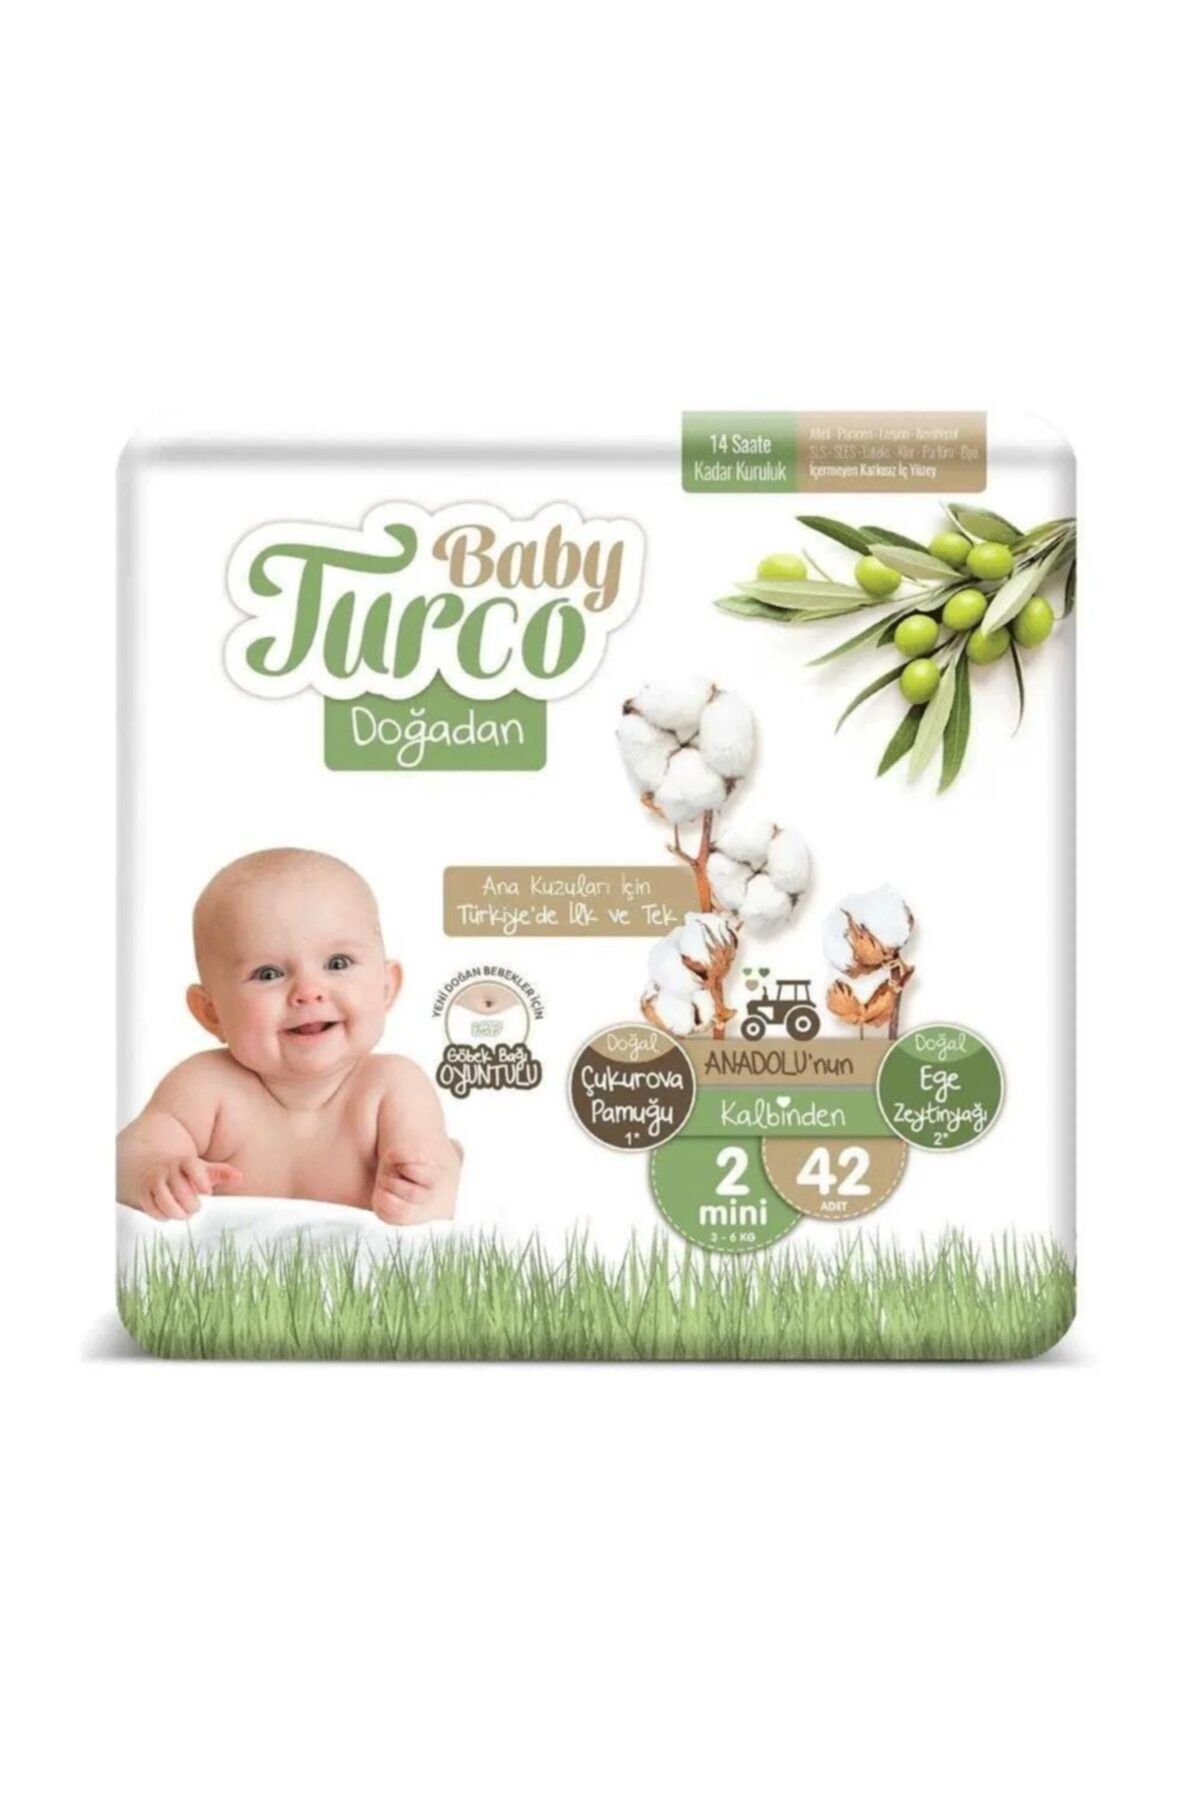 Doğadan Baby Turco Bebek Bezi 2 Numara (42 Adet)